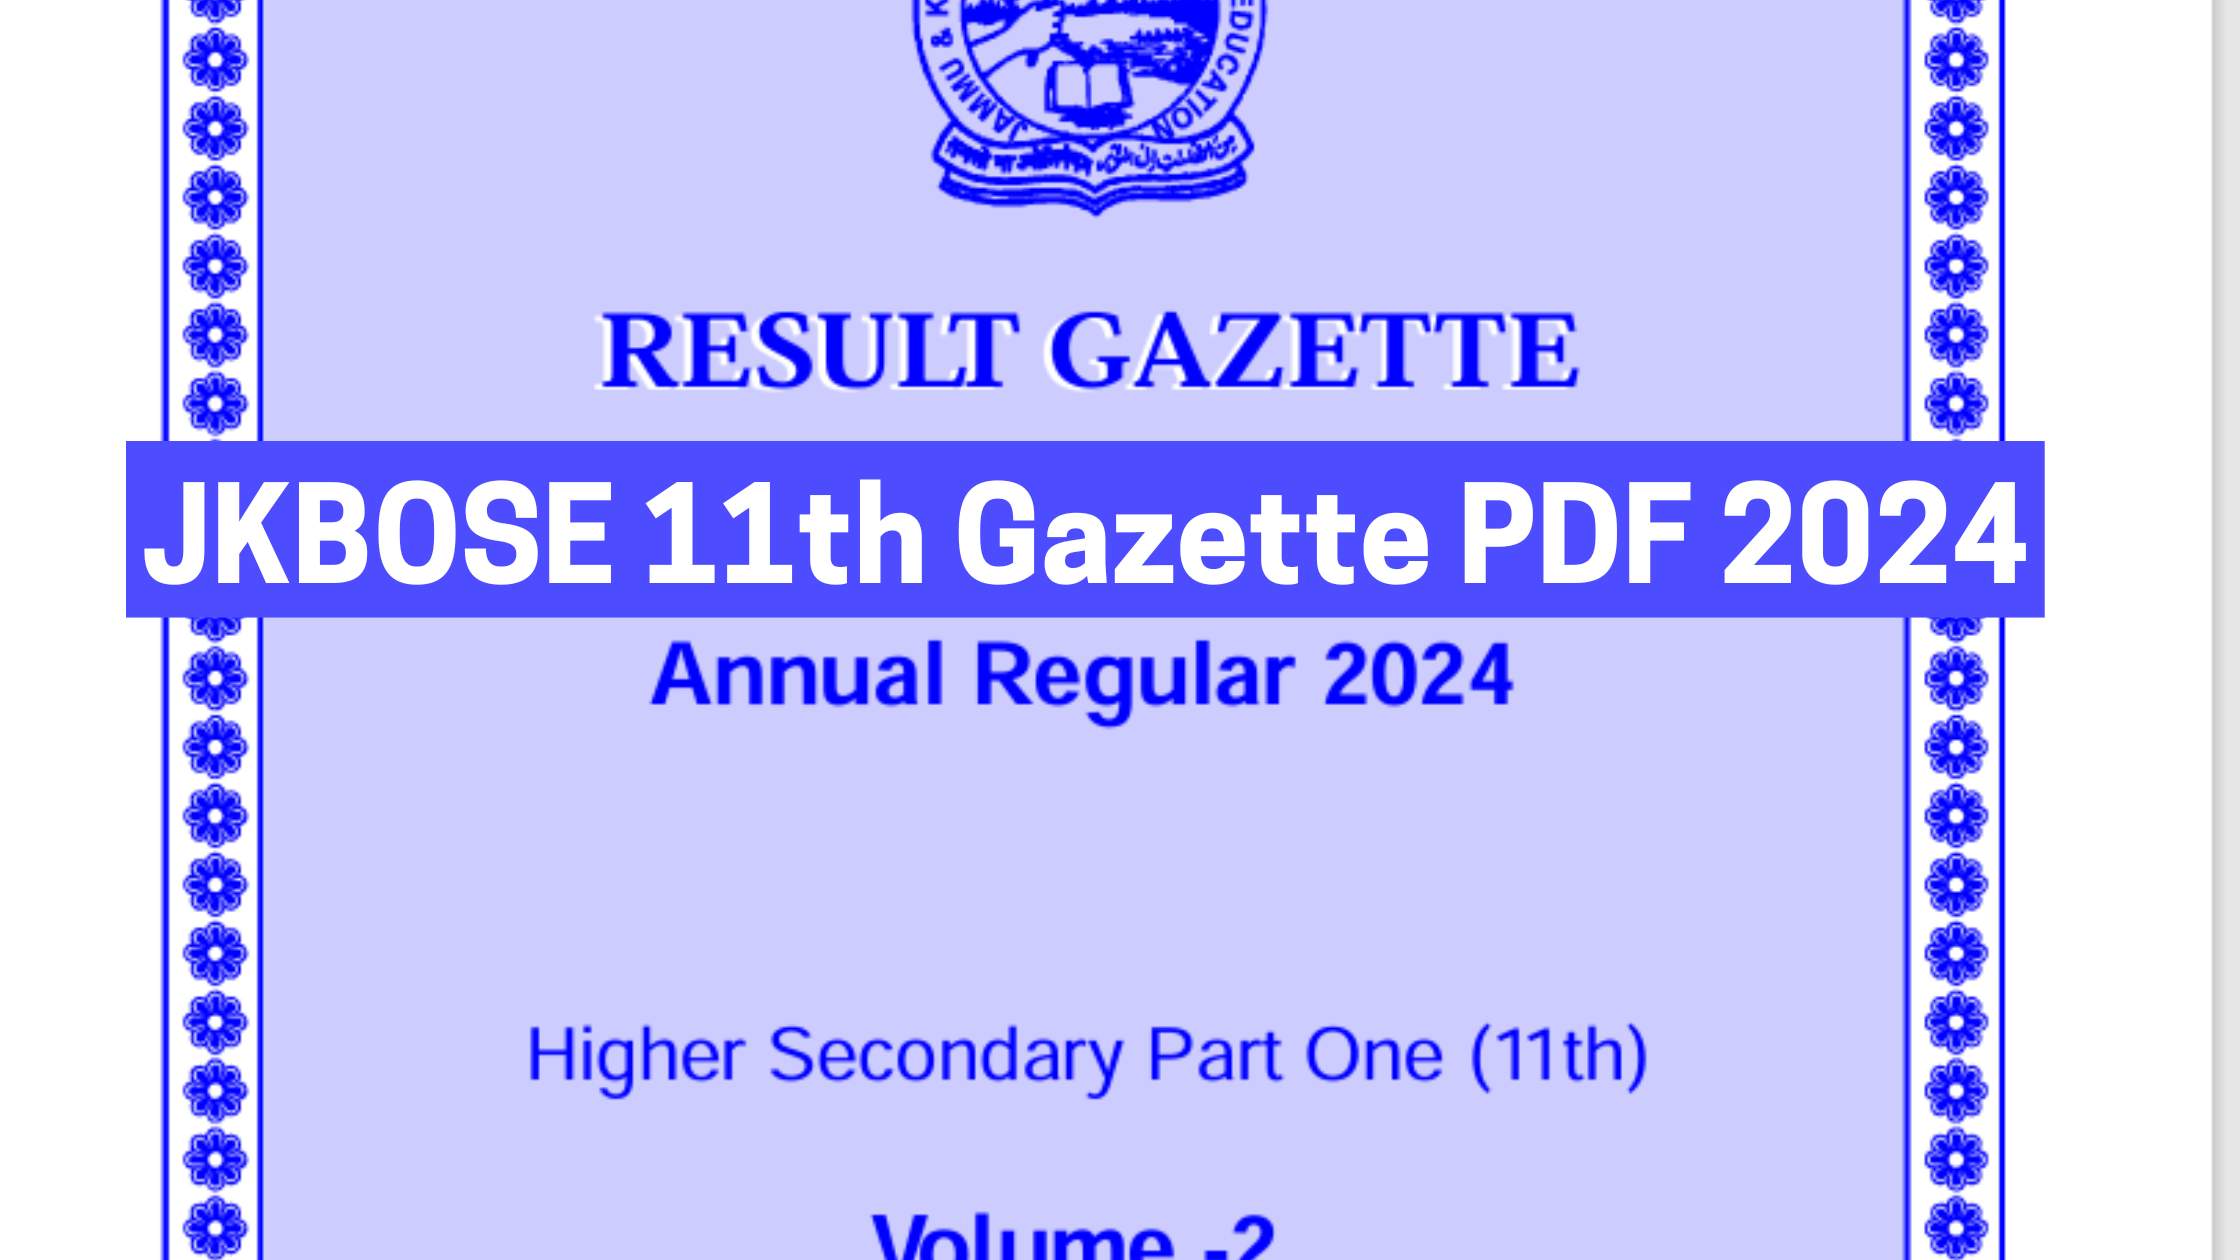 JKBOSE 11th Gazette PDF 2024